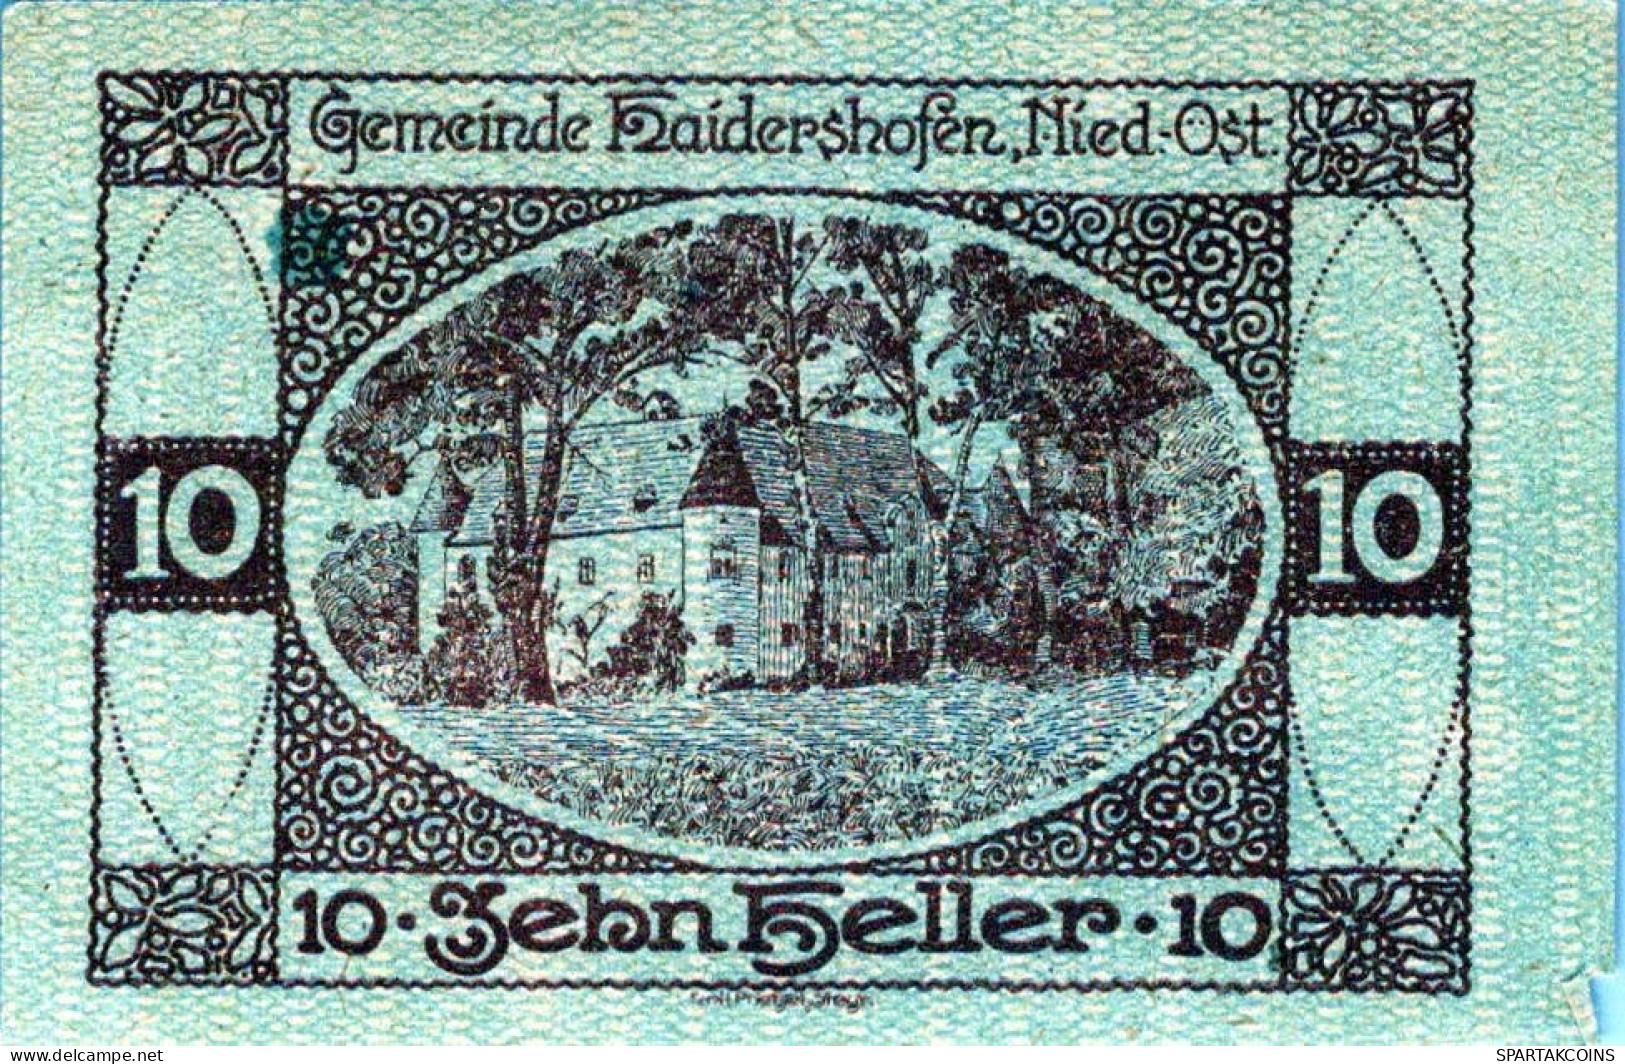 10 HELLER 1920 Stadt HAIDERSHOFEN Niedrigeren Österreich Notgeld #PD619 - [11] Local Banknote Issues